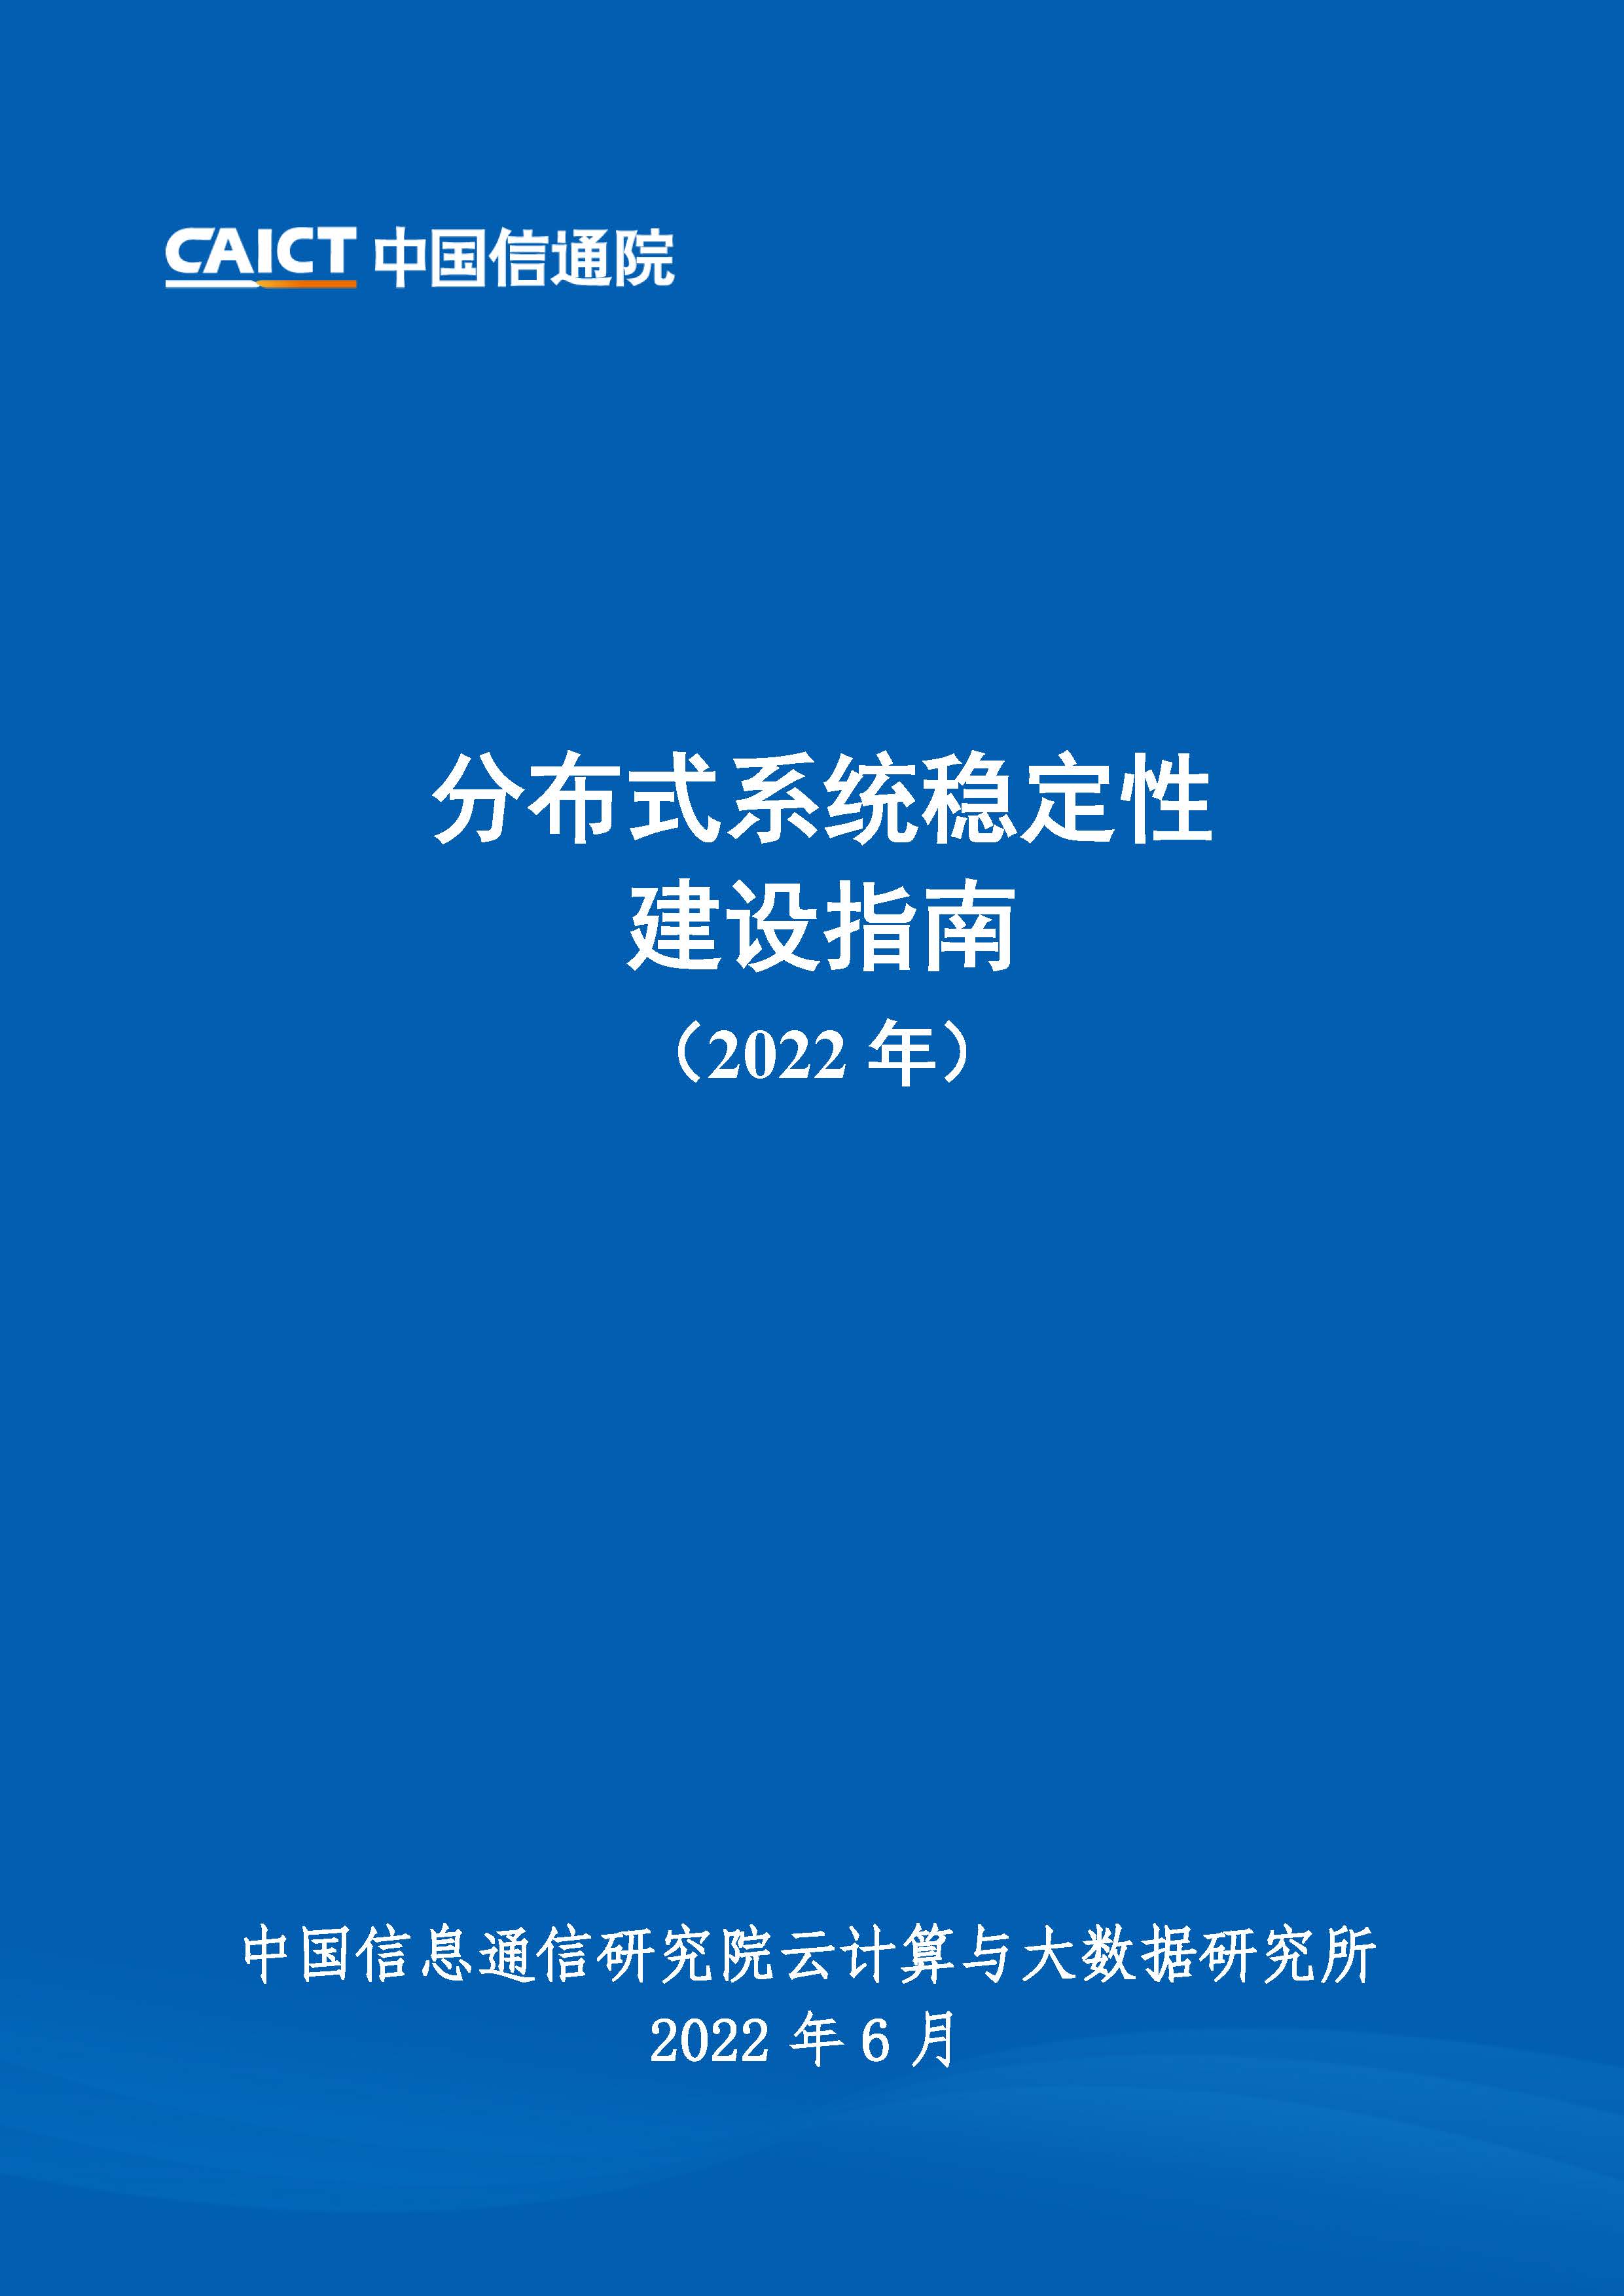 《分布式系统稳定性建设指南（2022年）》首页.jpg